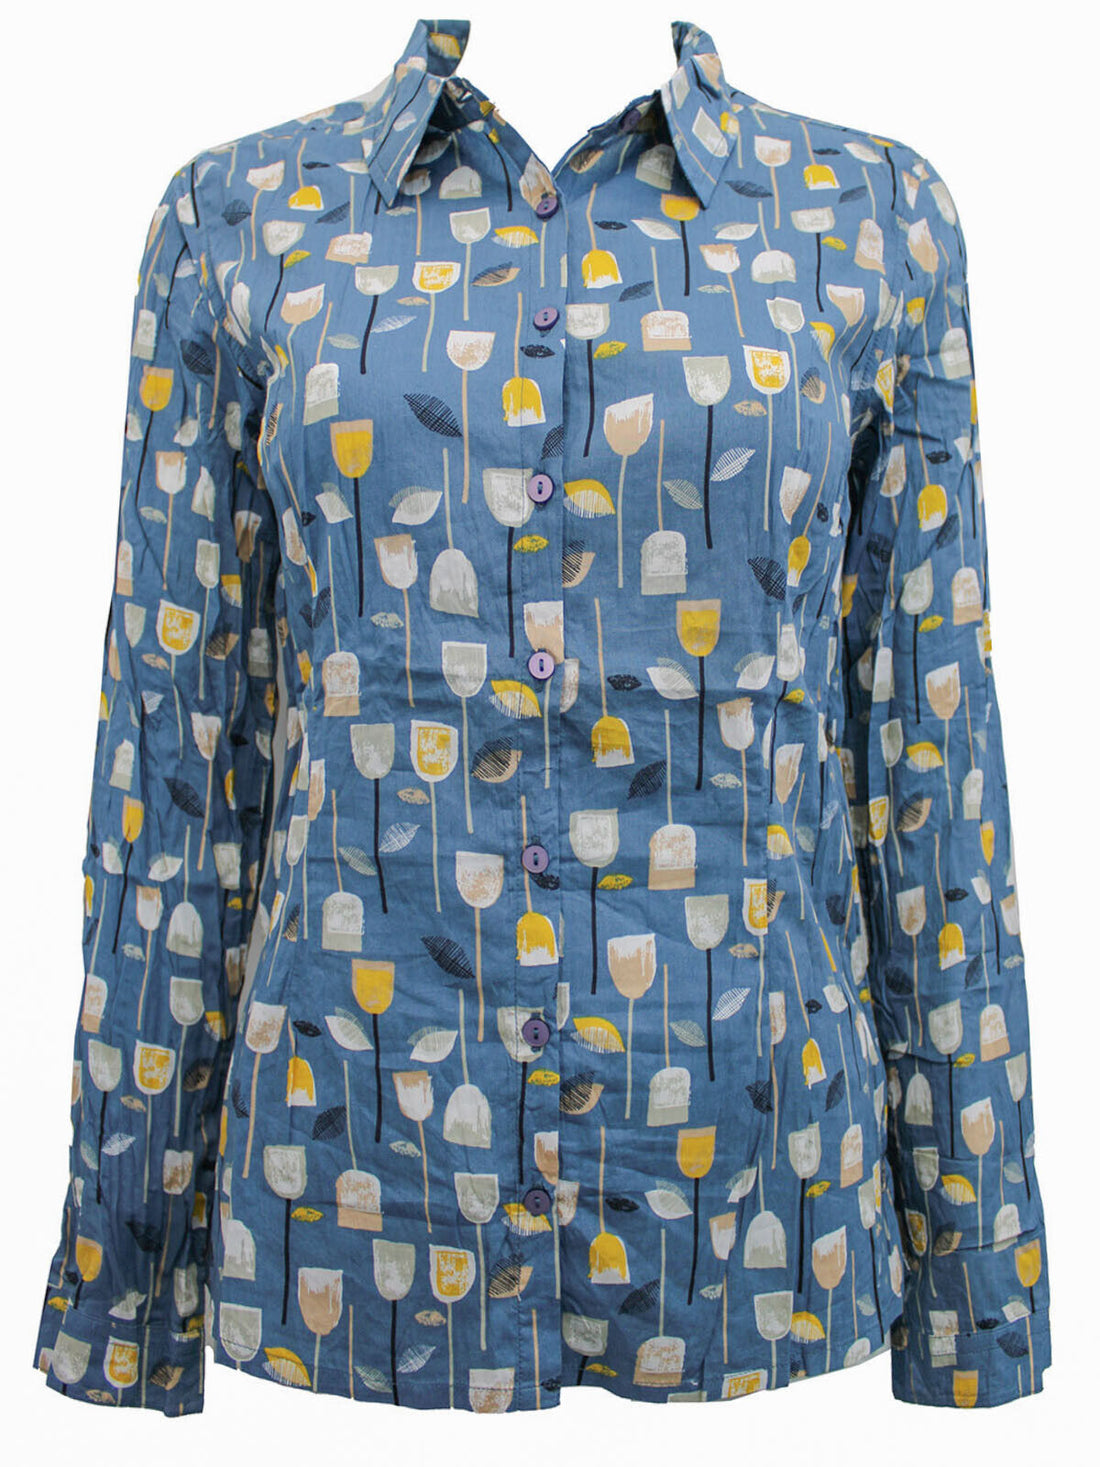 EX SEASALT Block Print Tulip Eden Larissa Shirt in Size 10 RRP £45